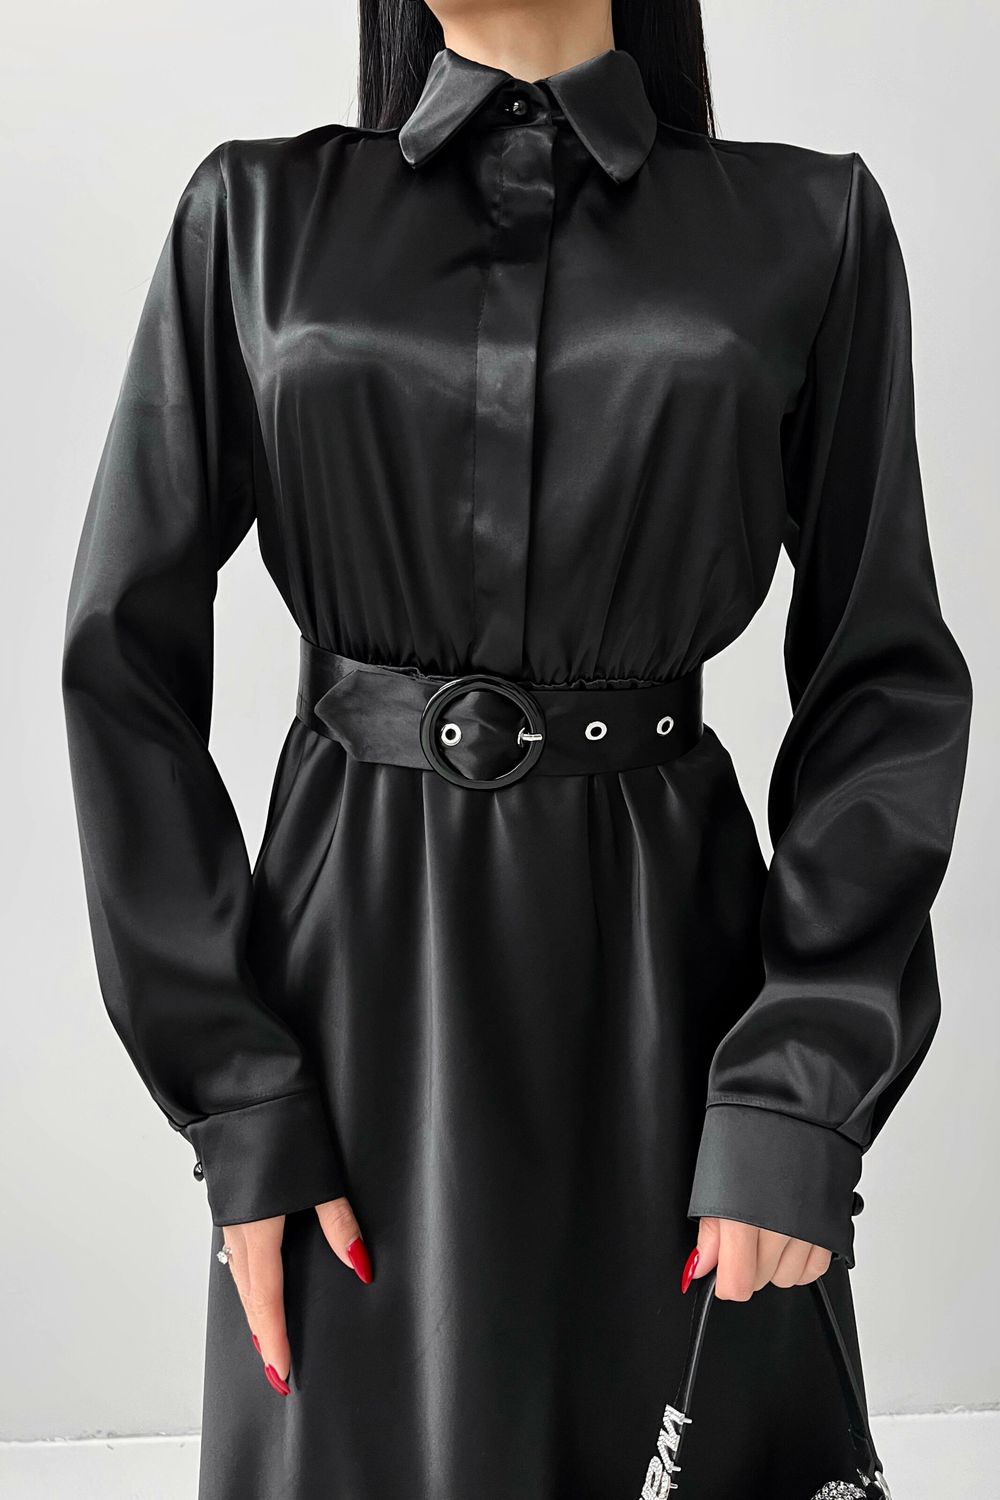 Вишукане вечірнє плаття з атласу чорного кольору - фото